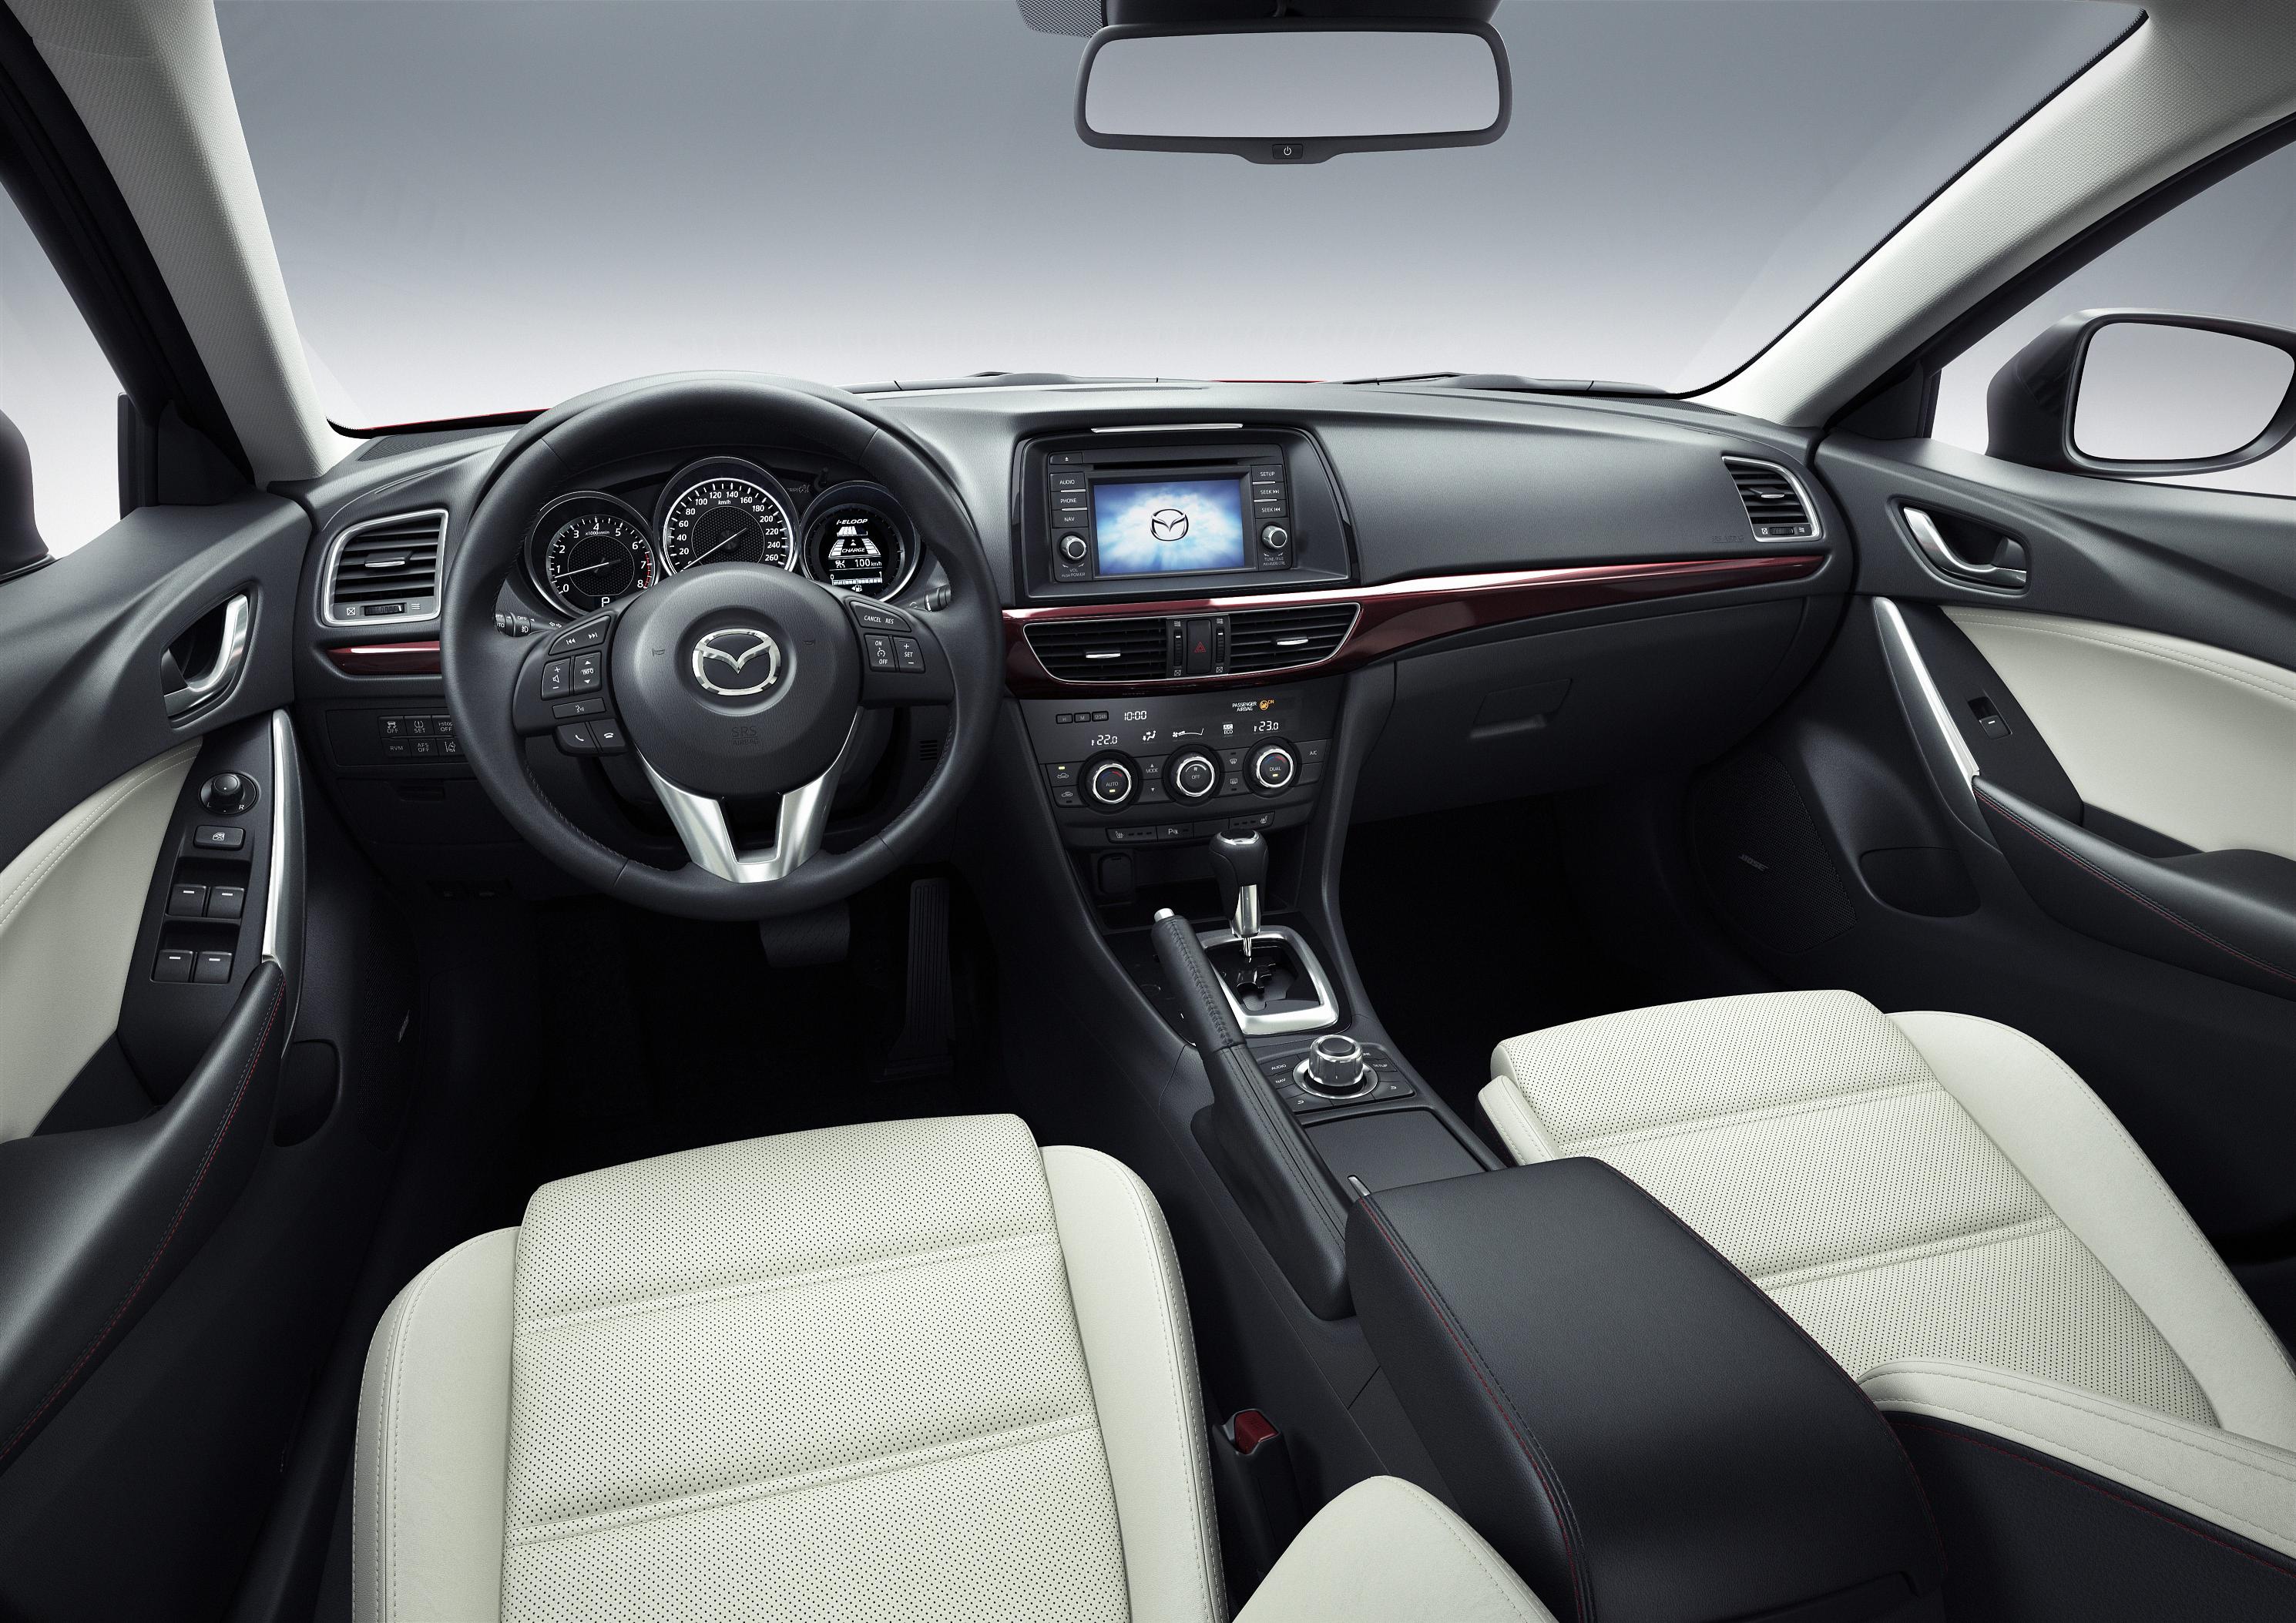 Mazda6 Sedan